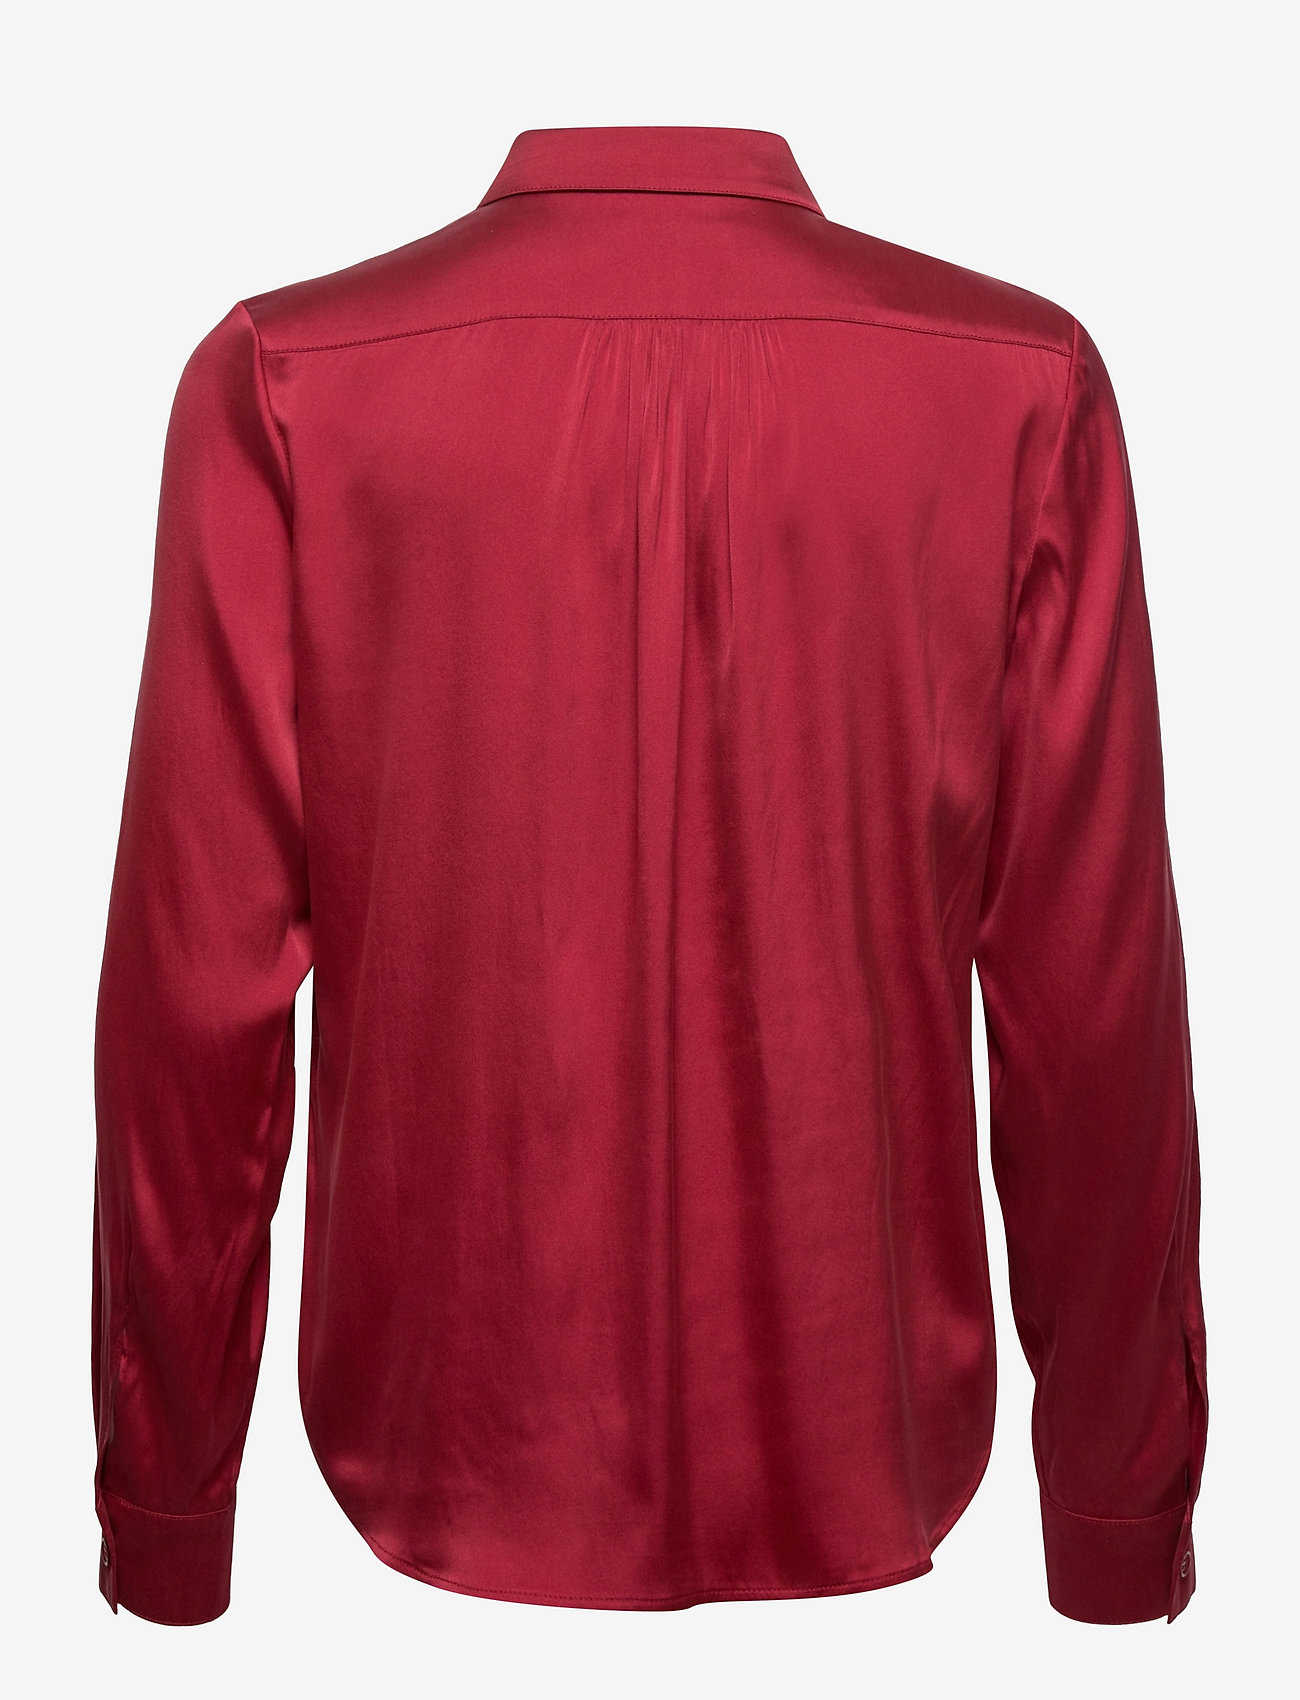 SAND - 3176 Matt - Latia - långärmade skjortor - red - 1